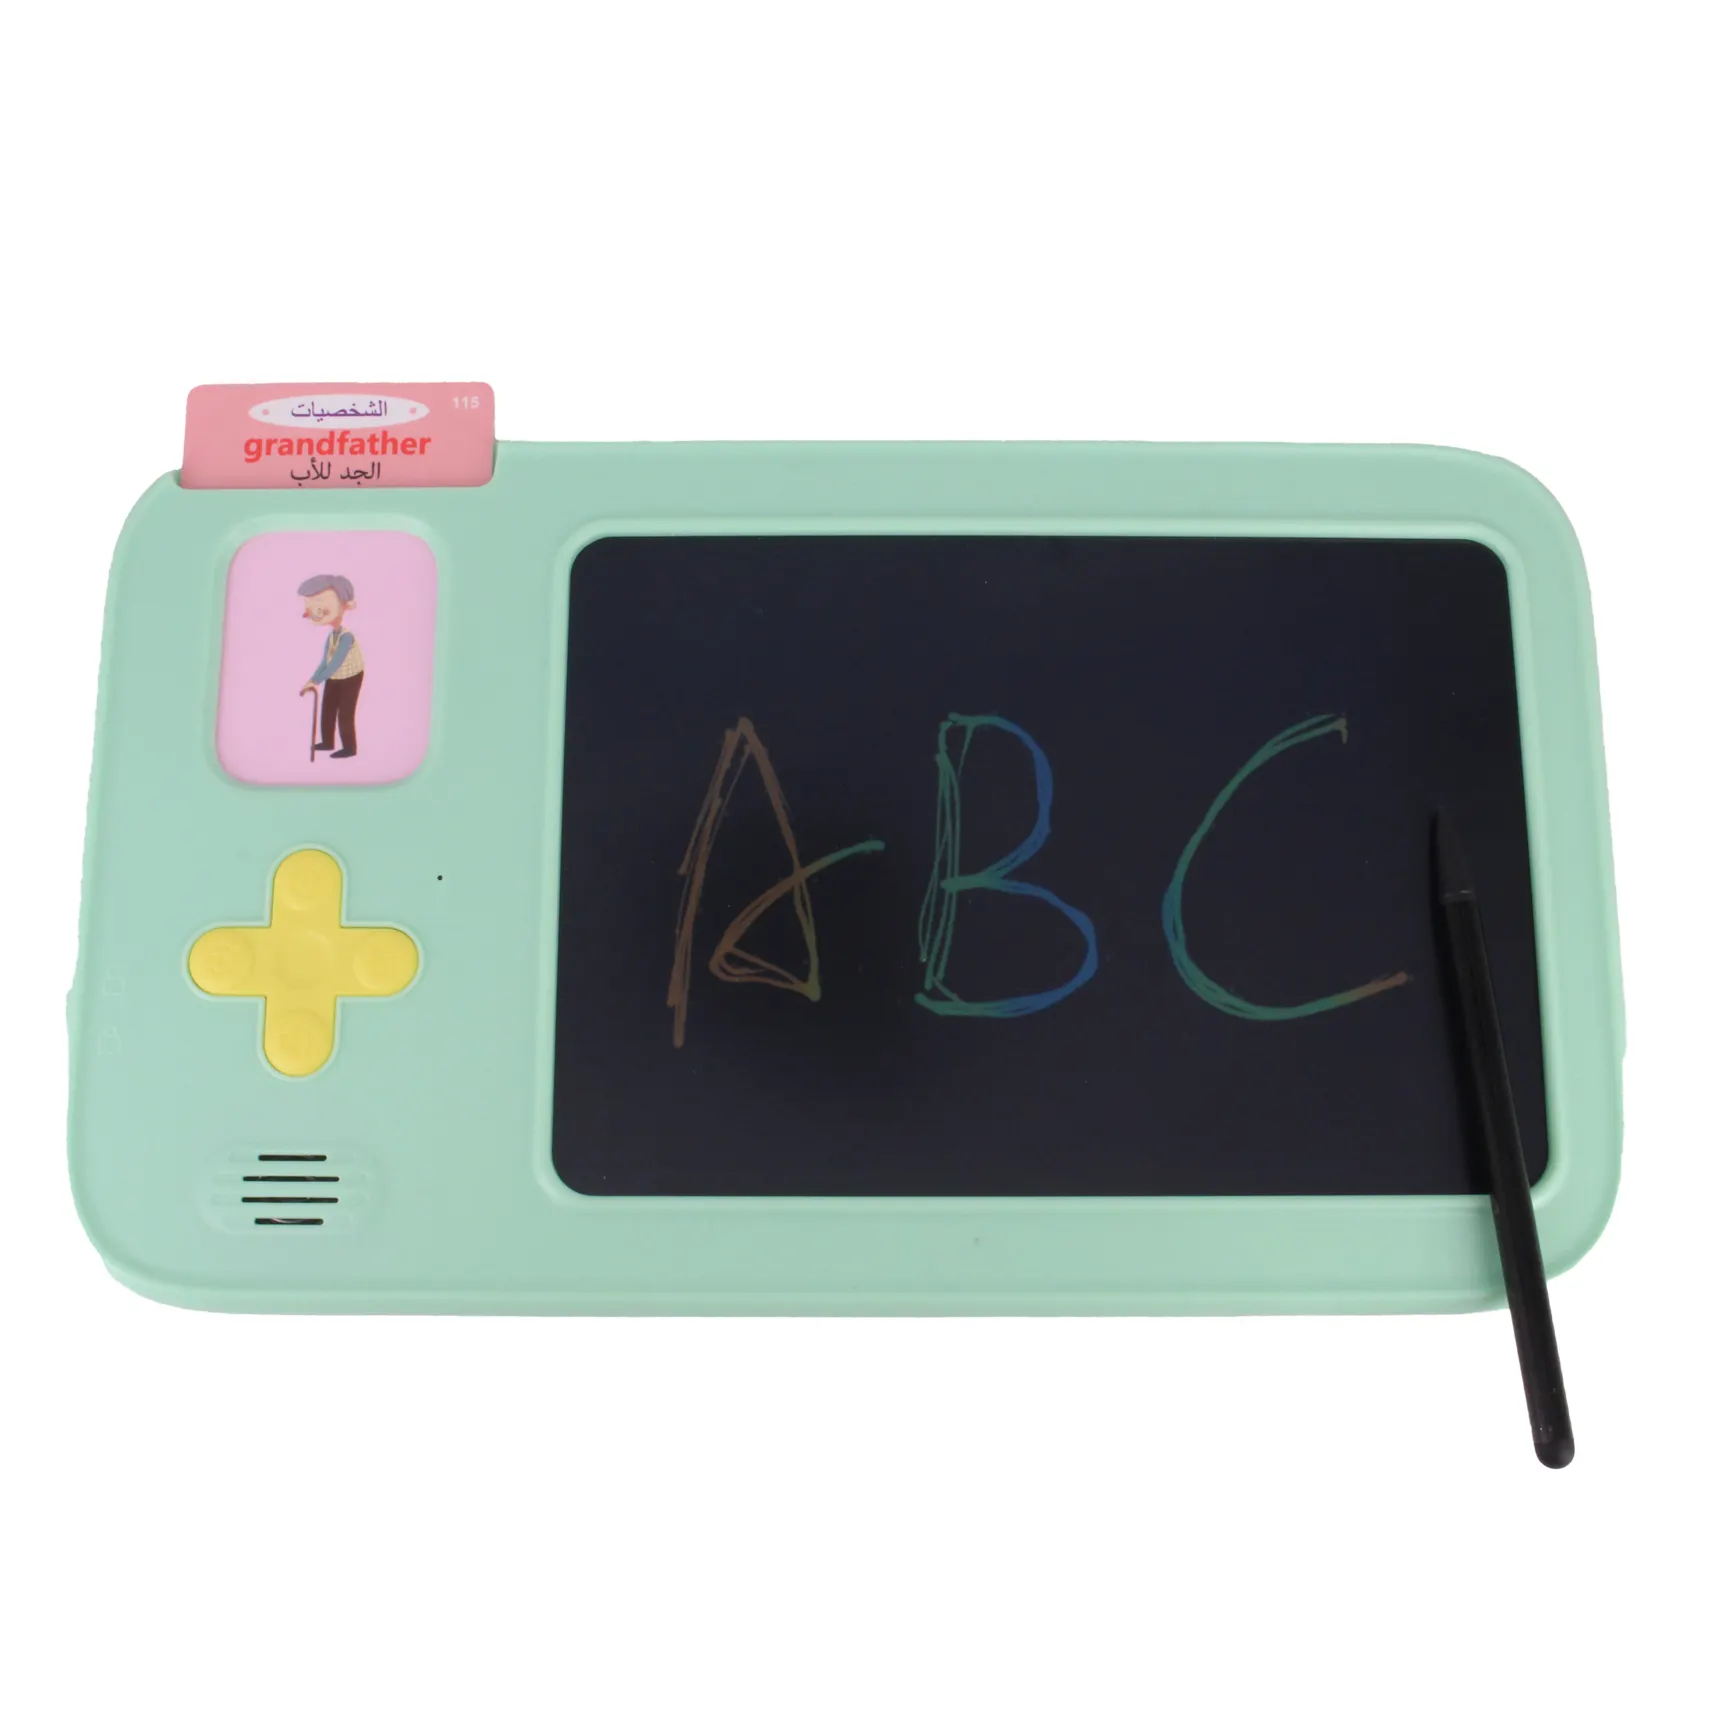 Englische Flash-Kartenmaschine 224 Sehenswürdigkeiten mehrsprachig sprechendes Spielzeug Kinder Erziehung Lerngerät für Kinder